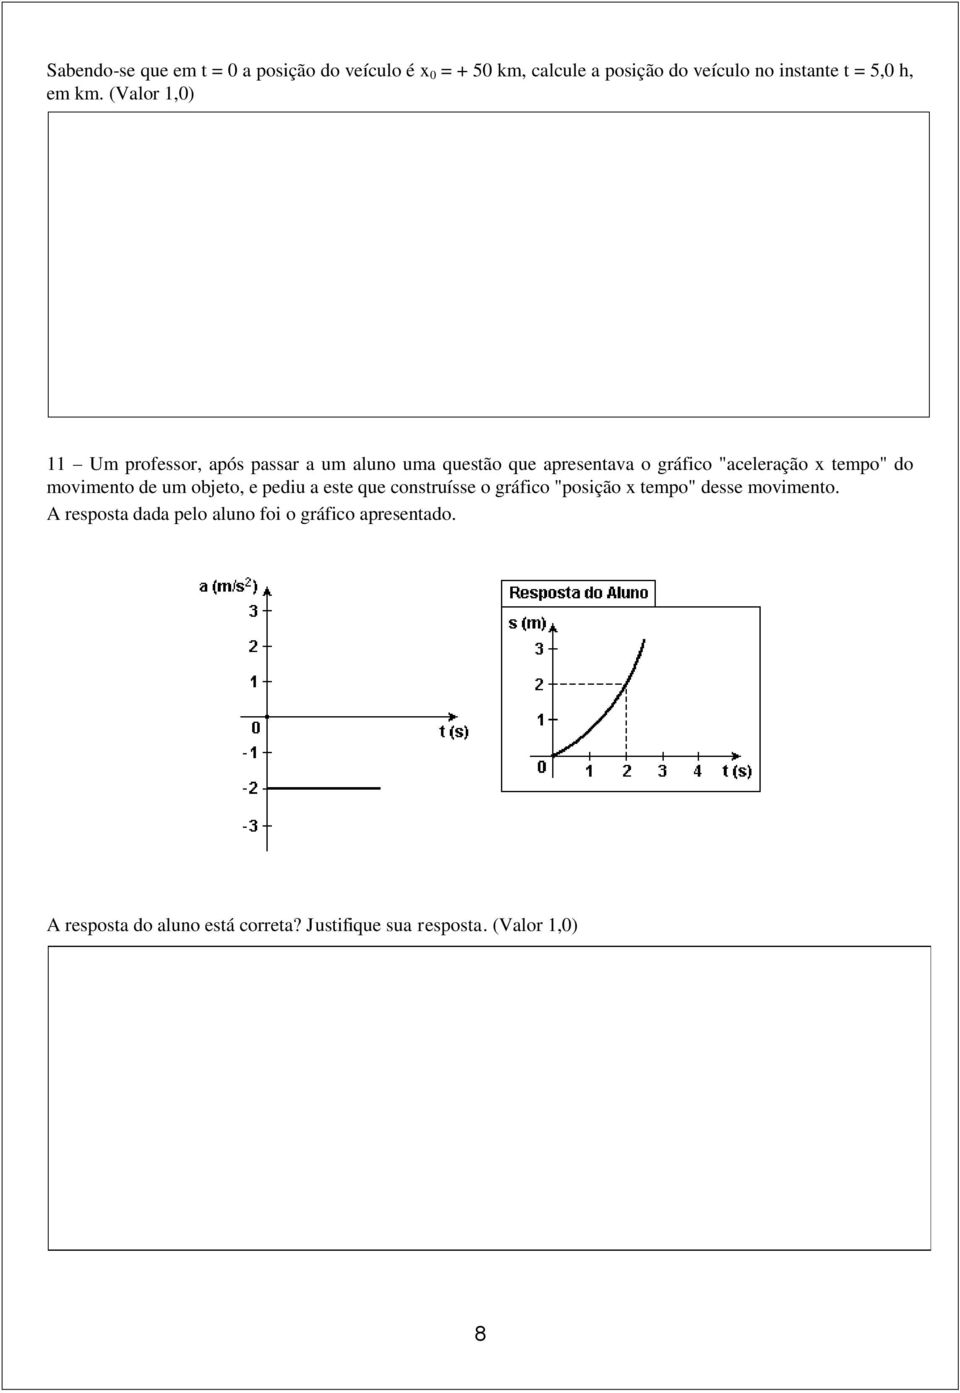 (Valor 1,0) 11 Um professor, após passar a um aluno uma questão que apresentava o gráfico "aceleração x tempo" do